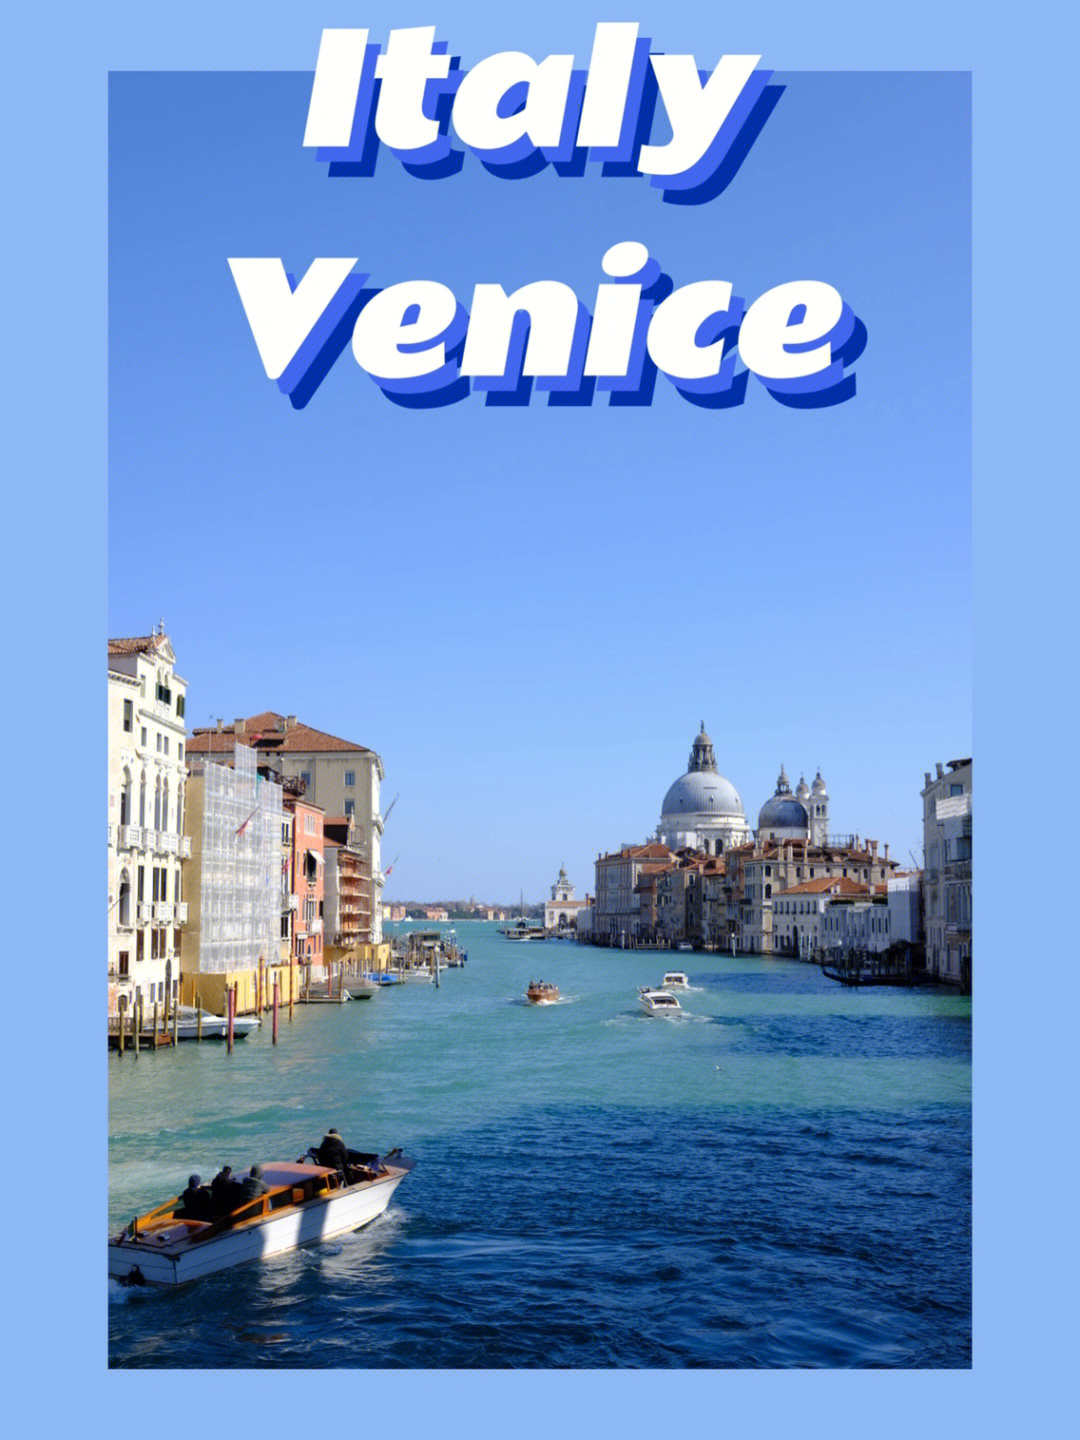 意大利十日游2——威尼斯 水与桥构建的城市